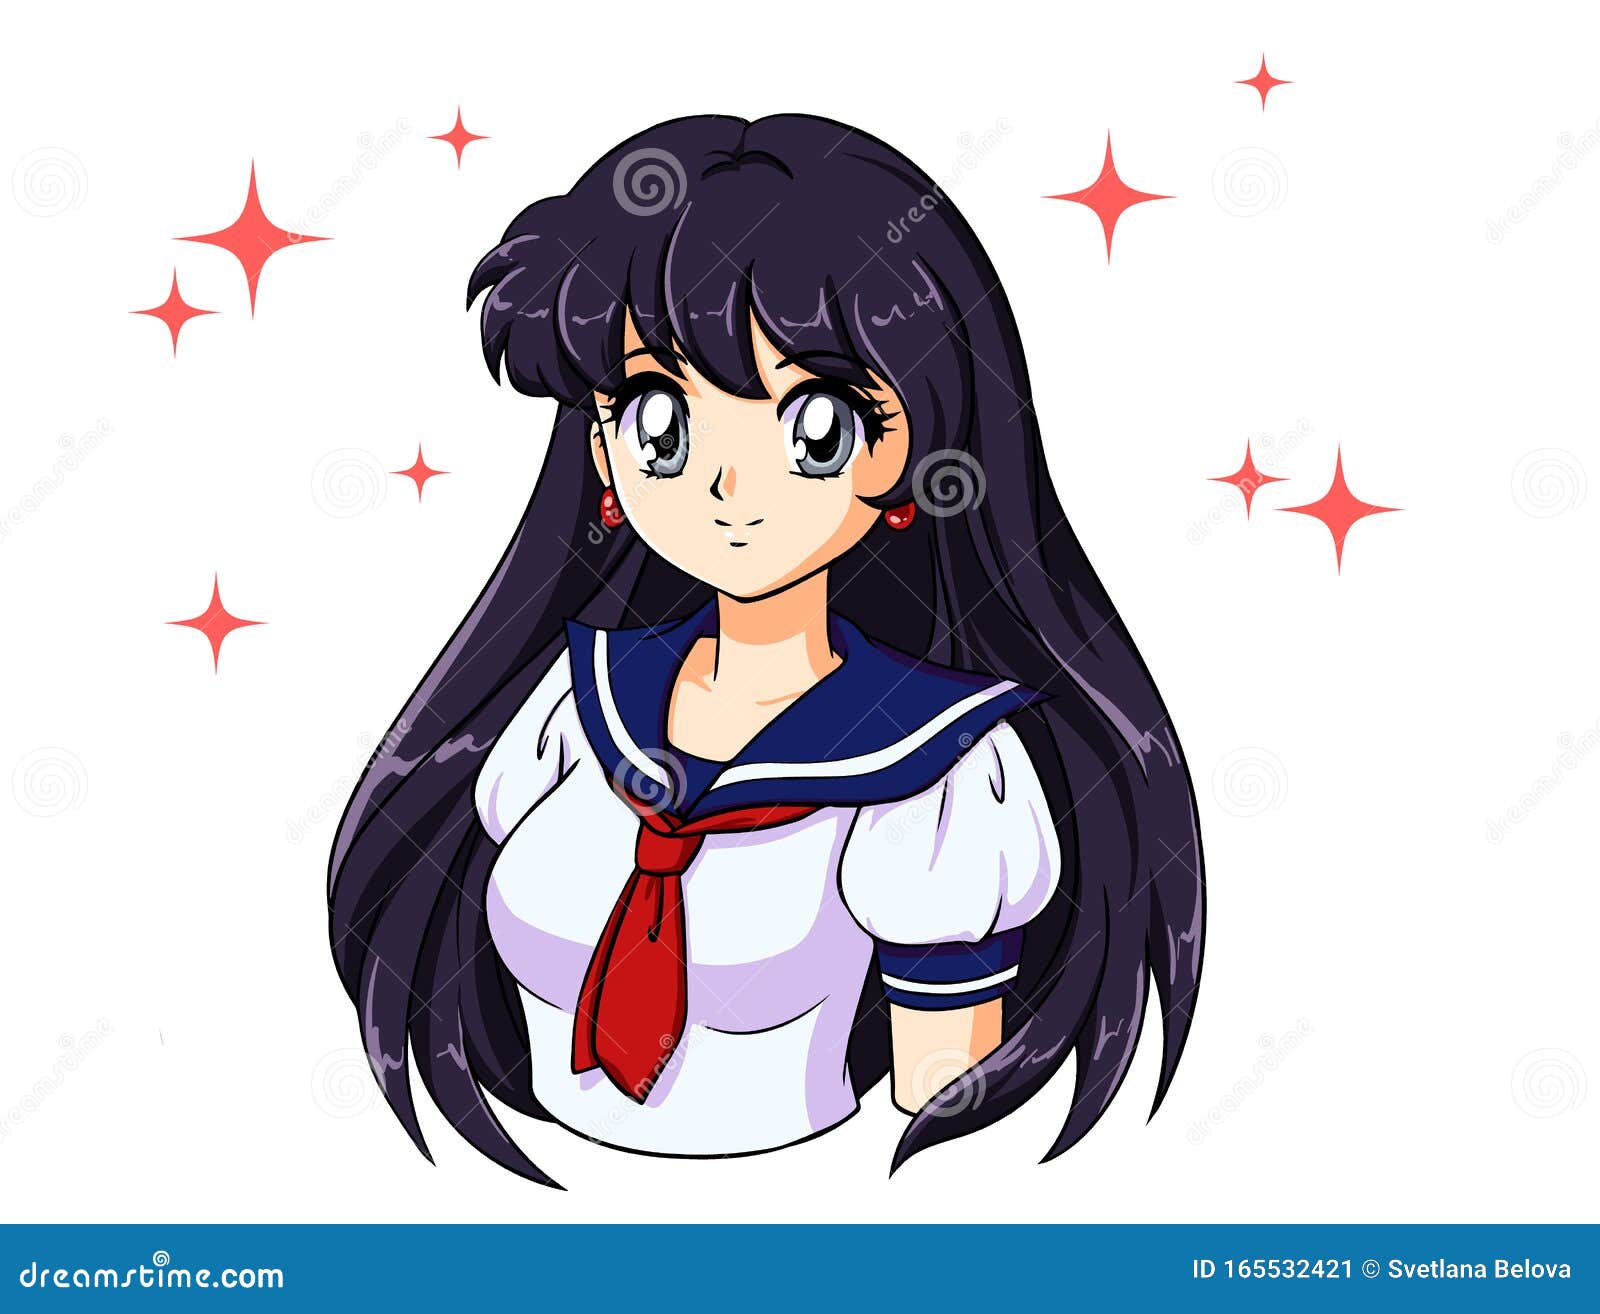 Anime Girl Stock Illustrations – 21,619 Anime Girl Stock Illustrations,  Vectors & Clipart - Dreamstime